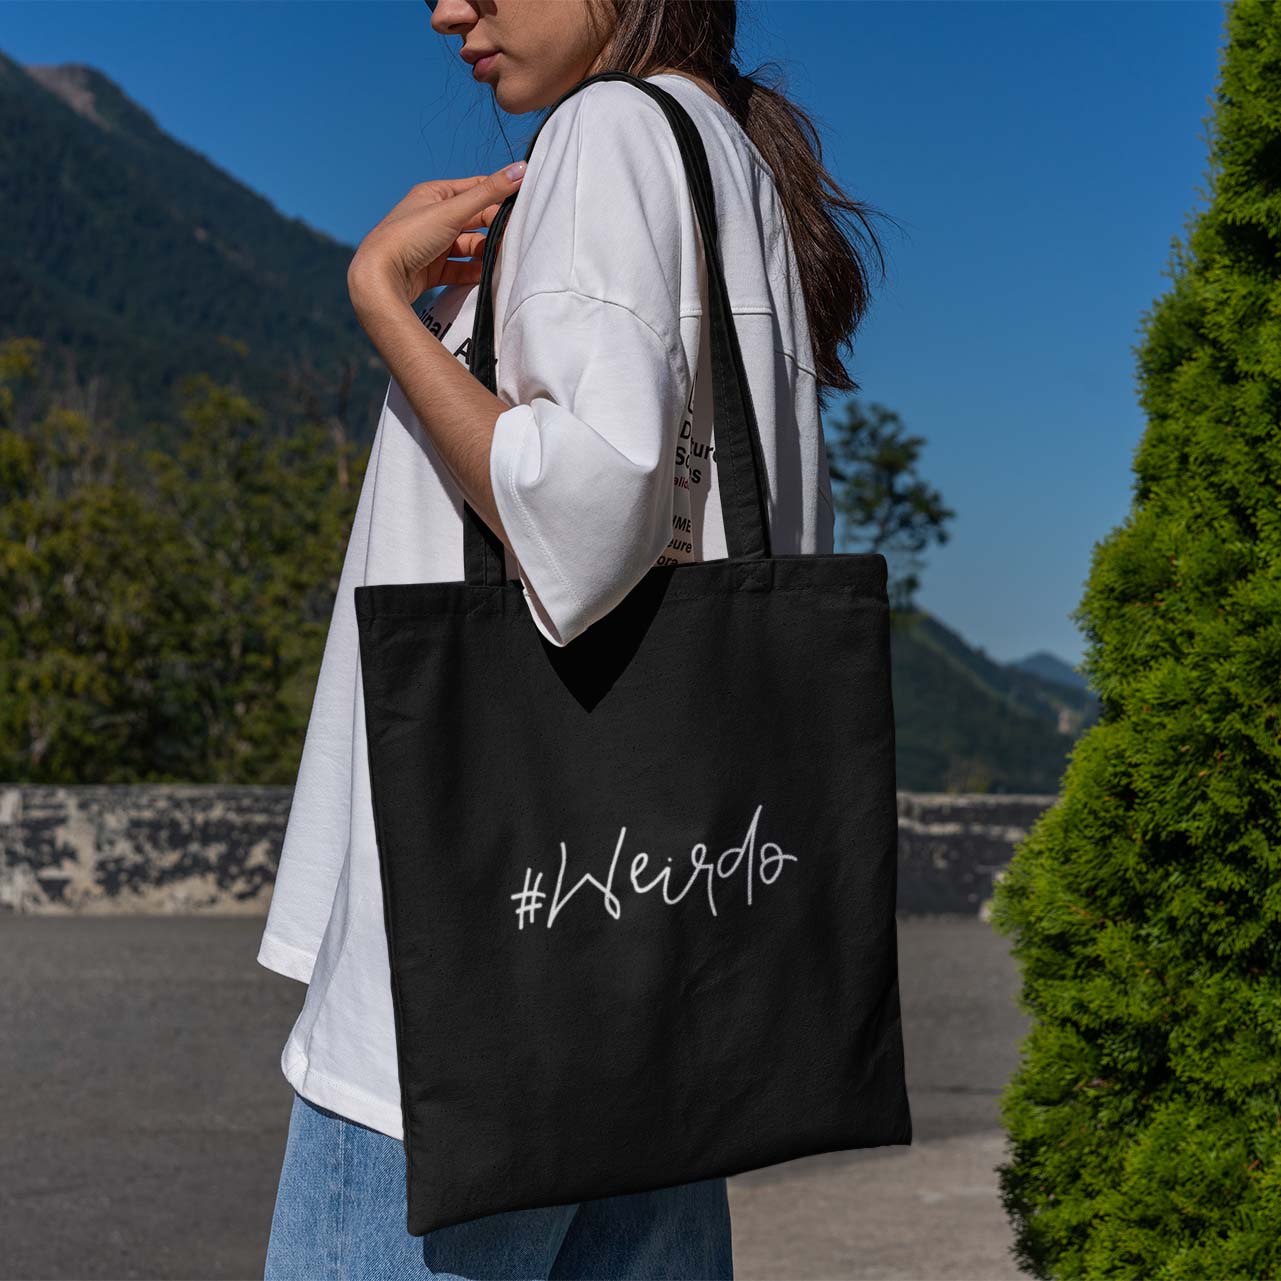 black shopping bag with white #Weirdo embroidery